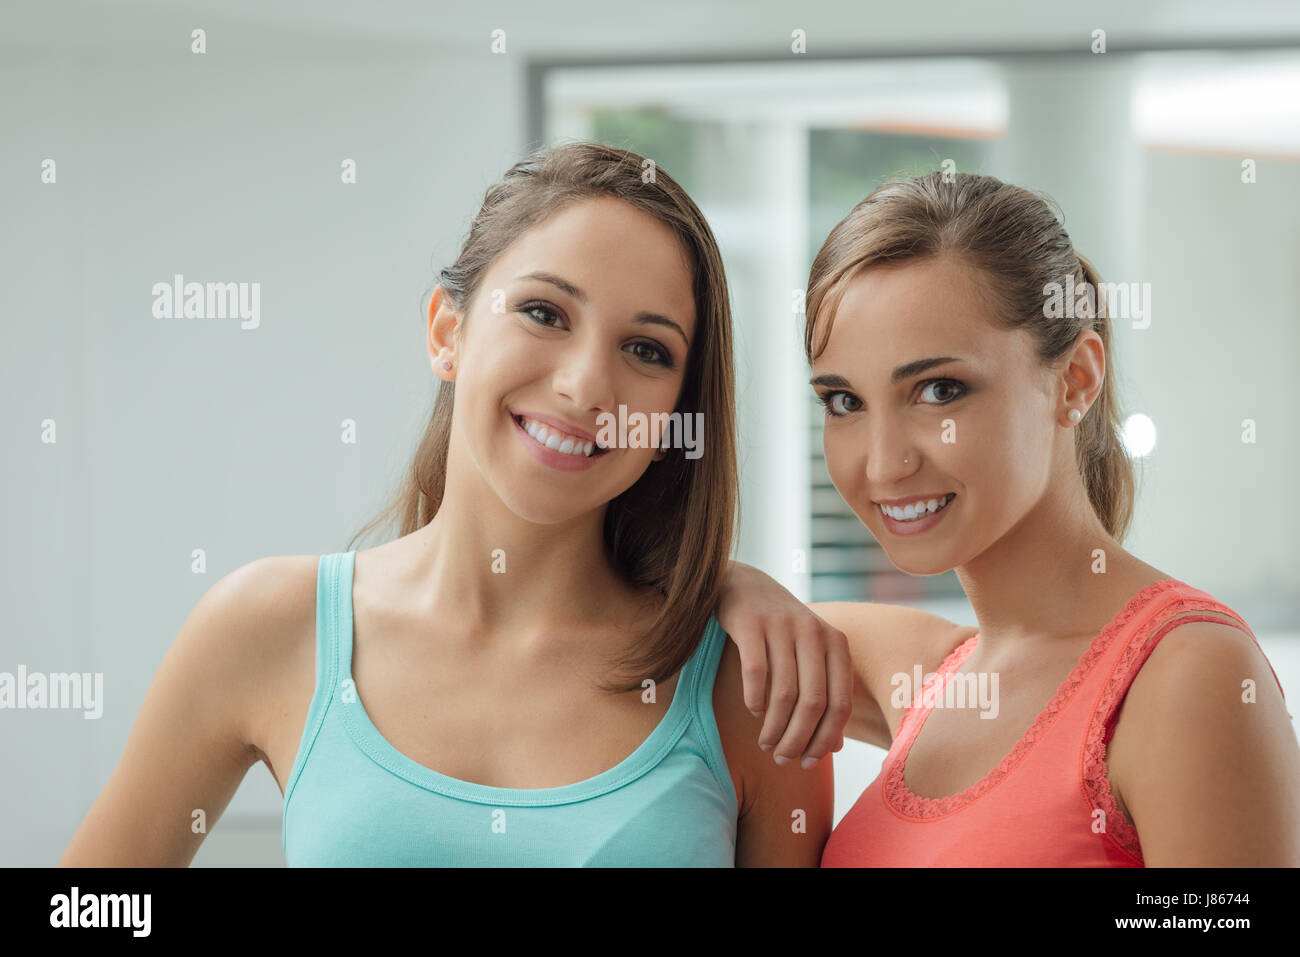 Cute ragazze sorridenti in posa insieme e guardando la telecamera, uno è appoggiata al suo amico della spalla Foto Stock